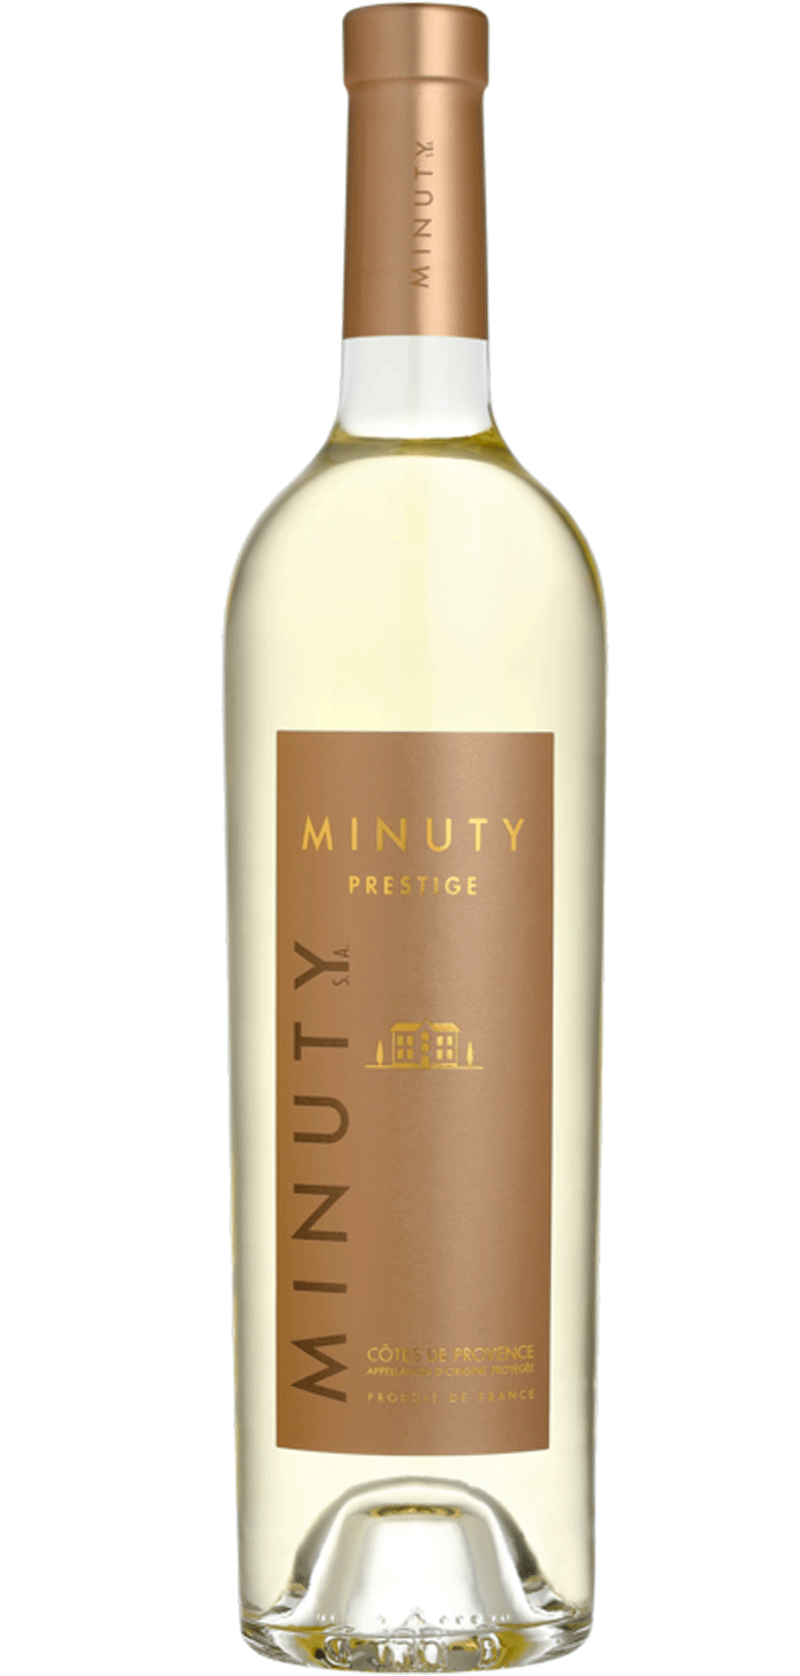 Minuty Prestige - Cru classé 2018 - White Wine